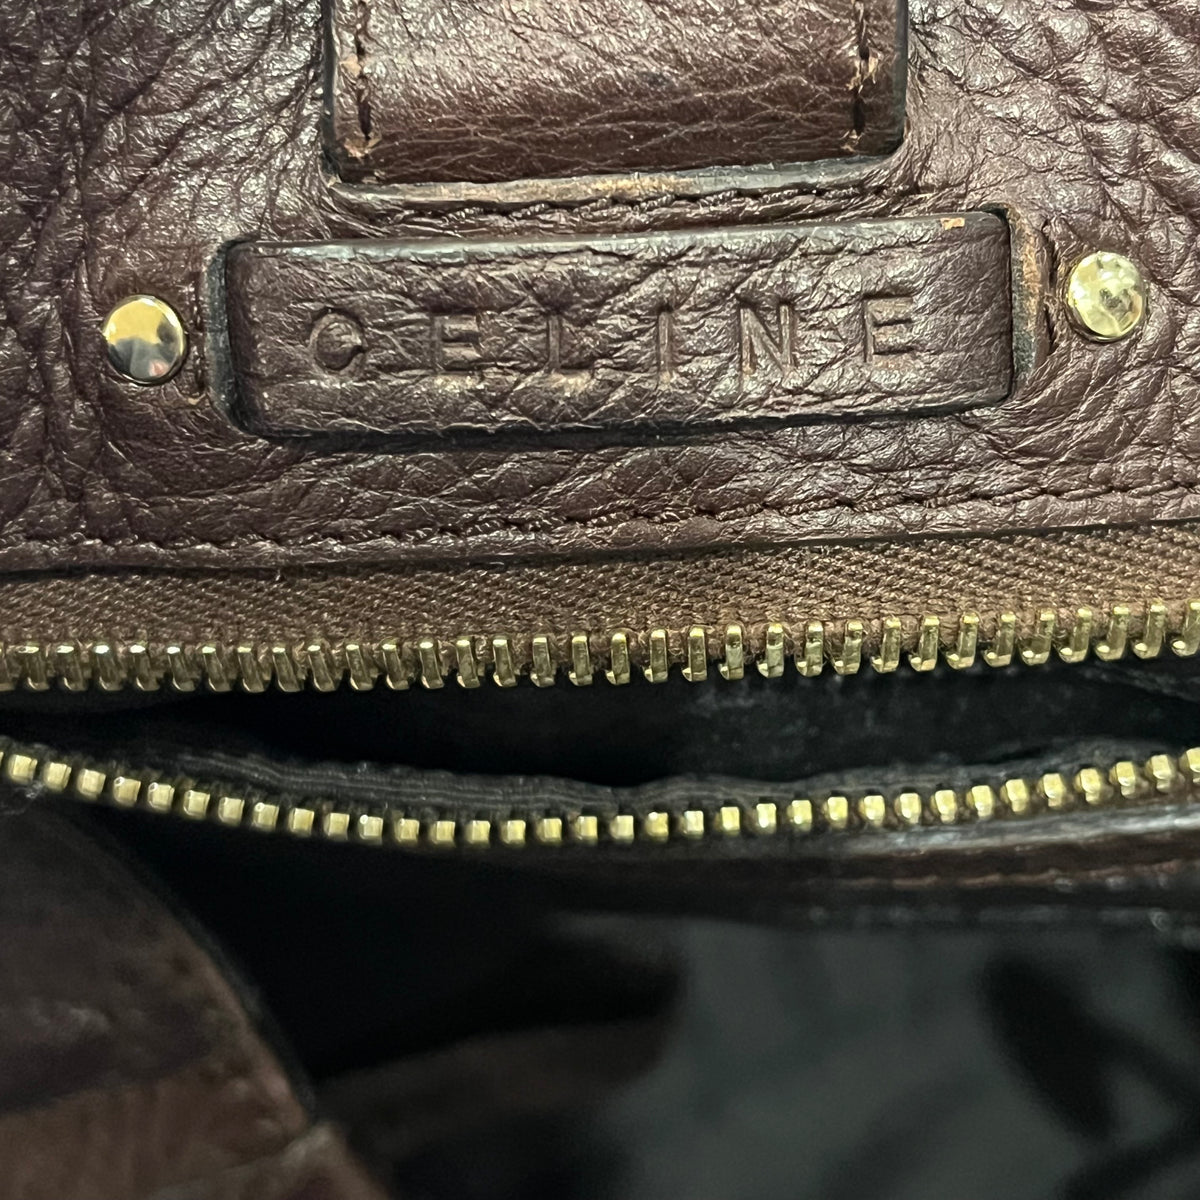 CELINE Brown Leather Triomphe Vintage Shoulder Bag